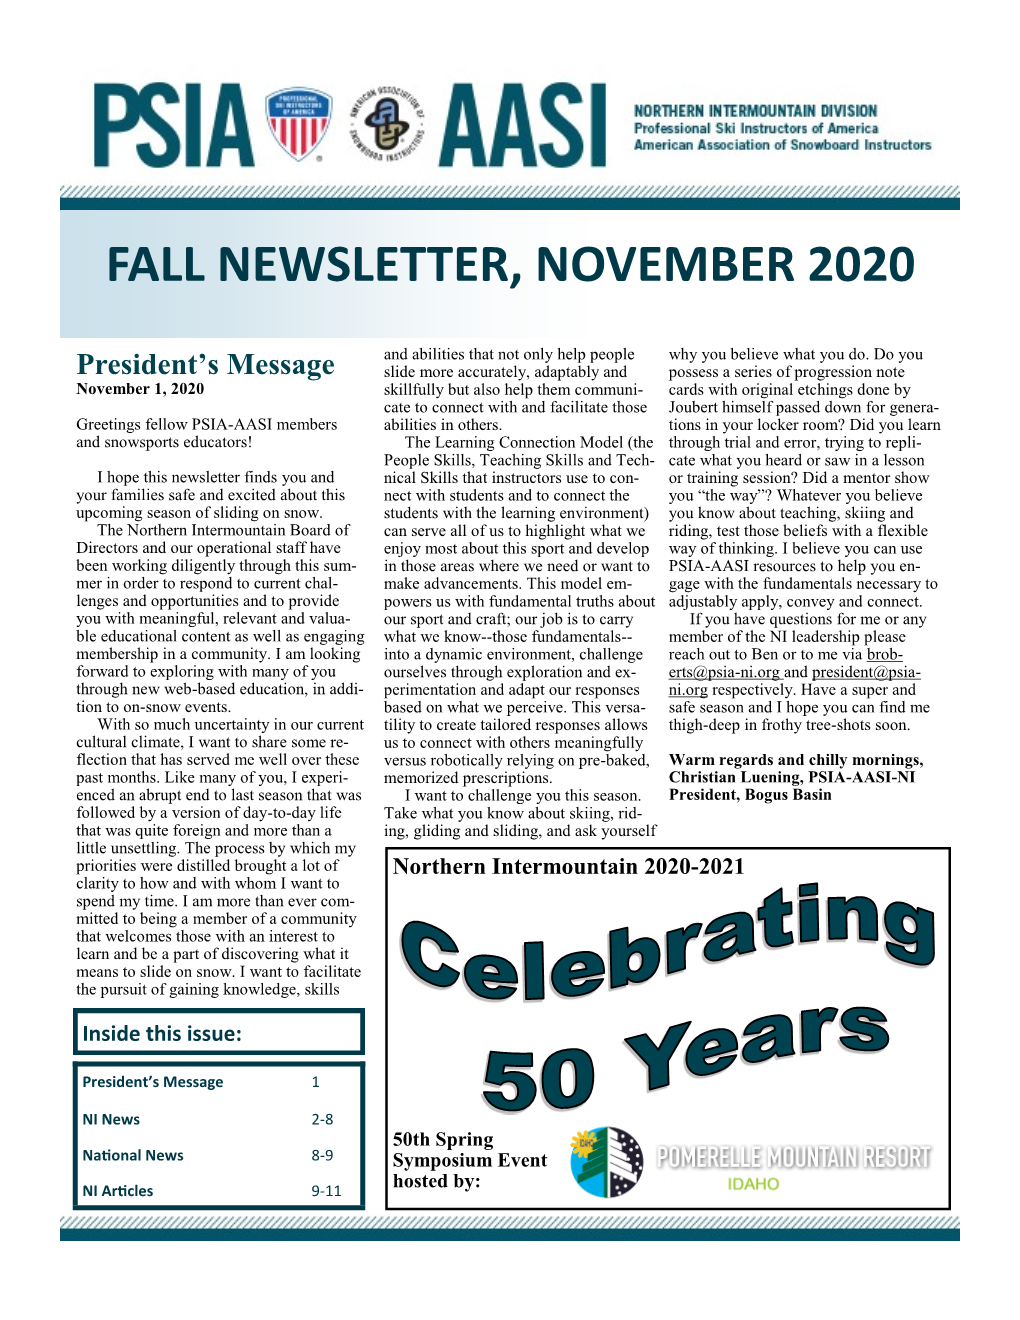 Northern Intermountain Fall Newsletter 2020